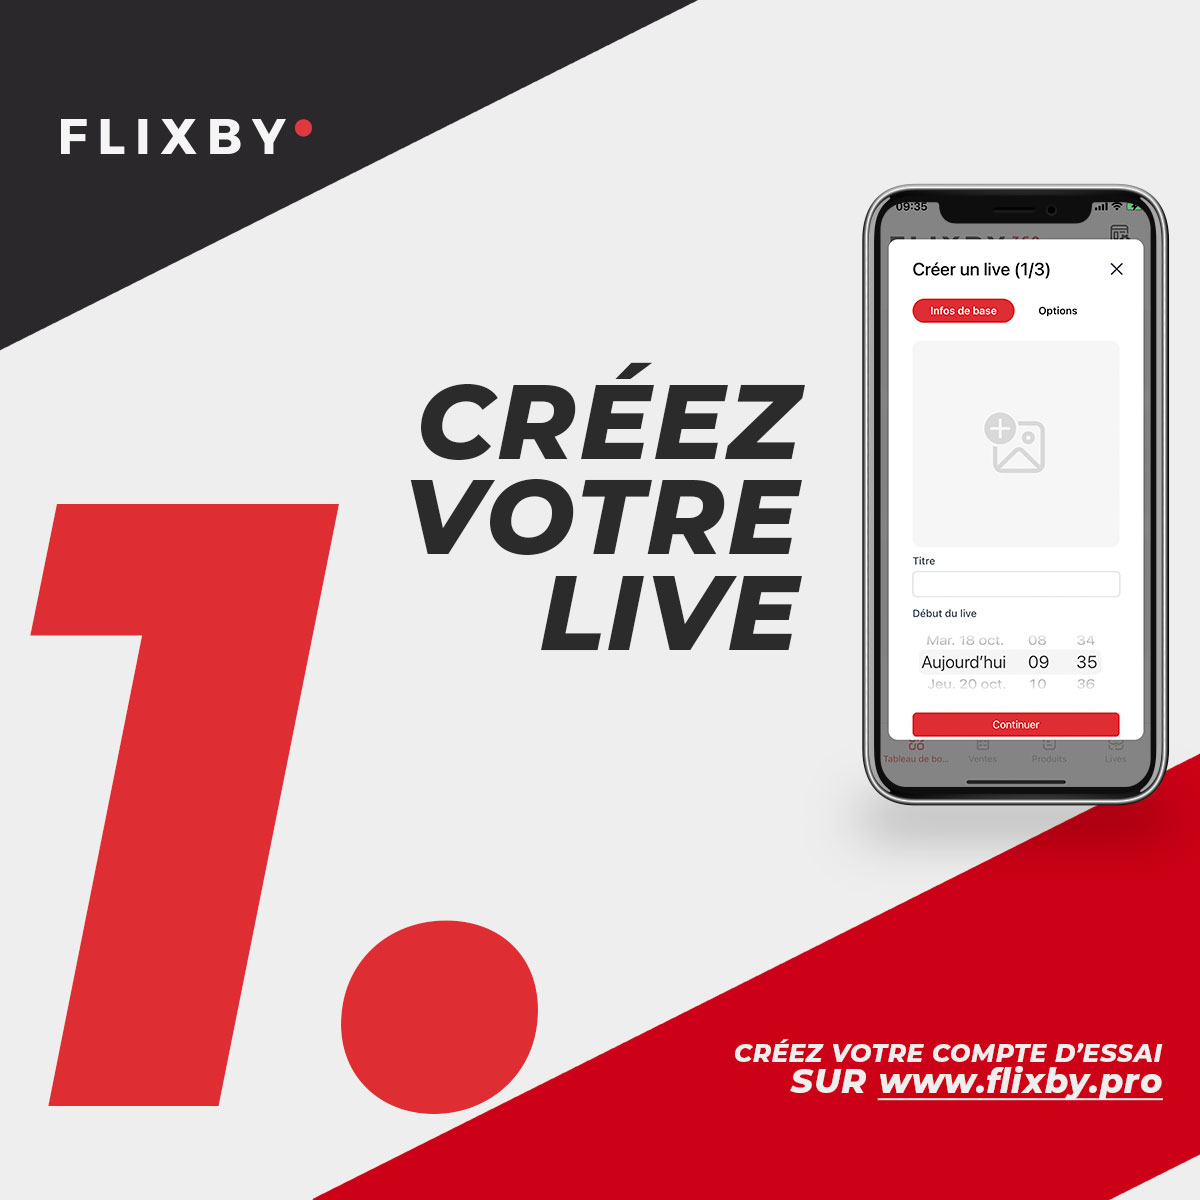 flixby créez votre live